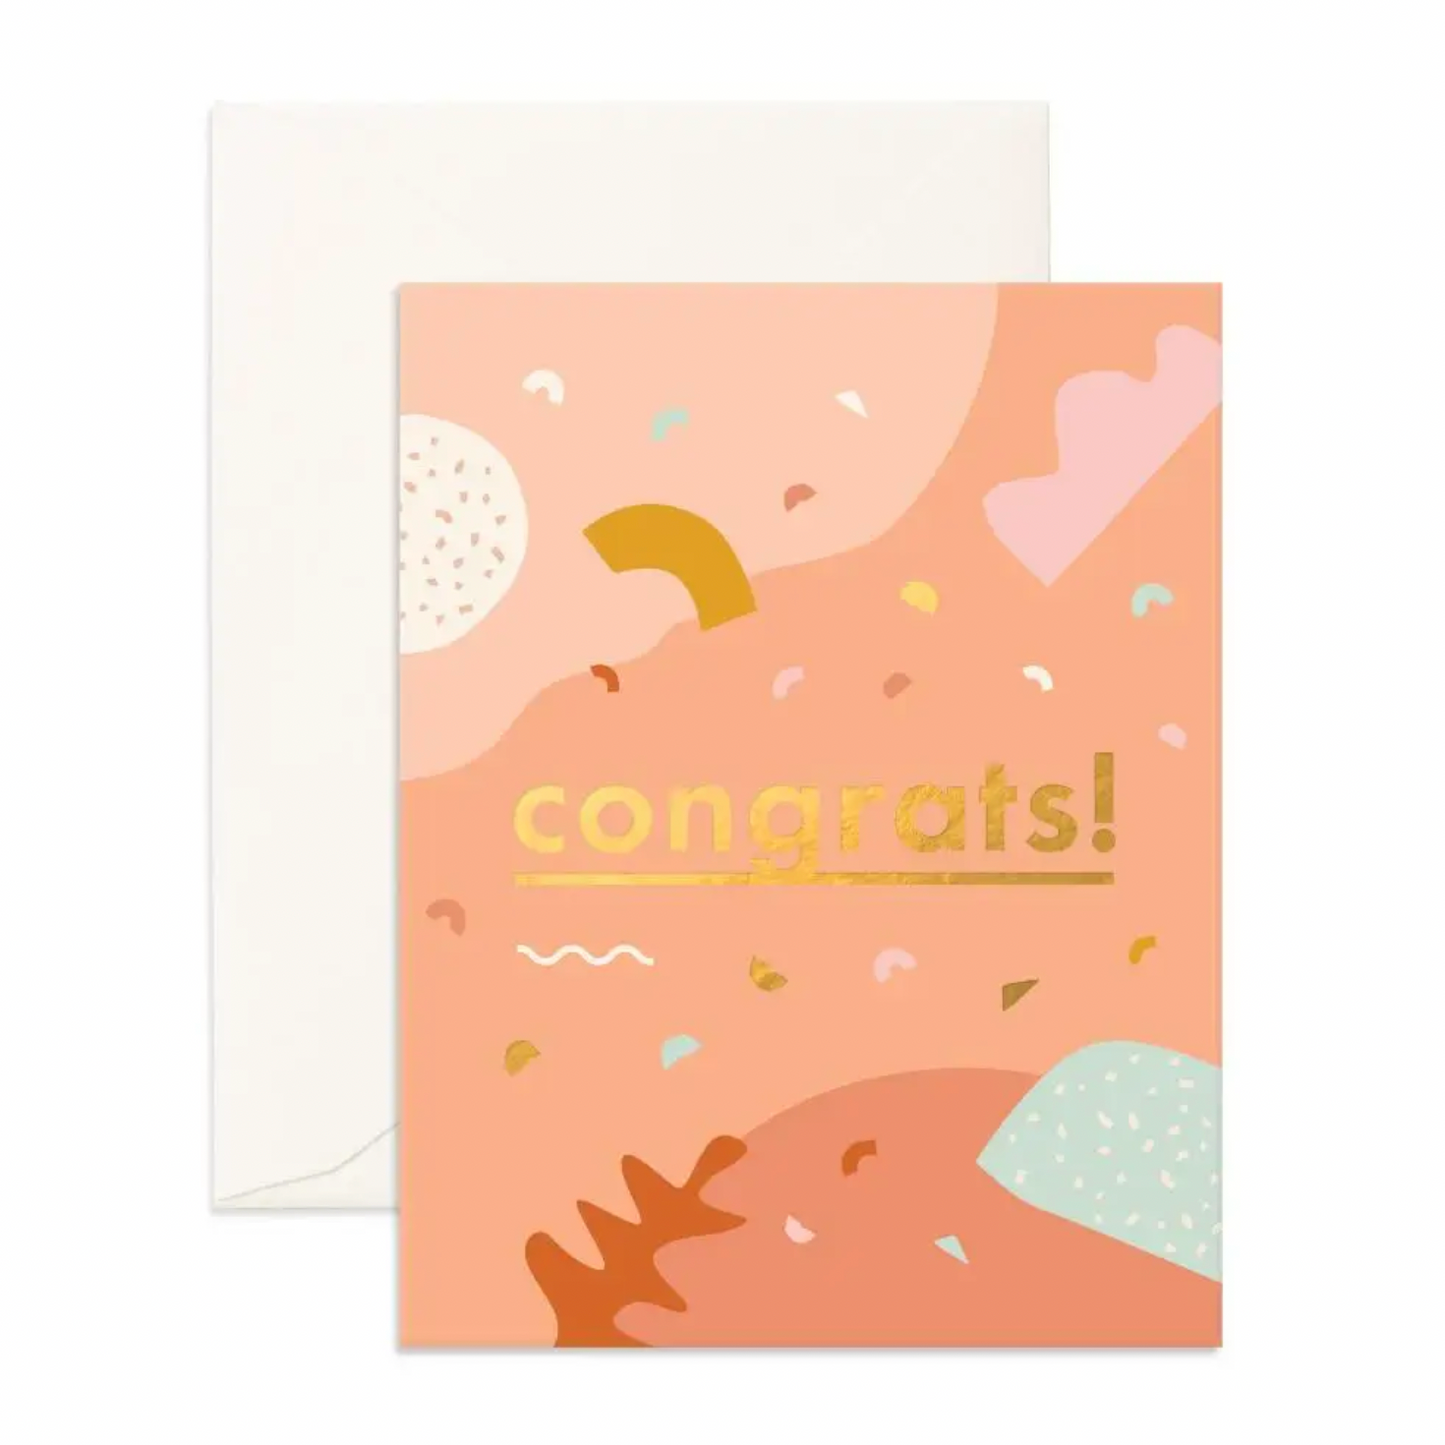 Congrats Abstract Greeting Card